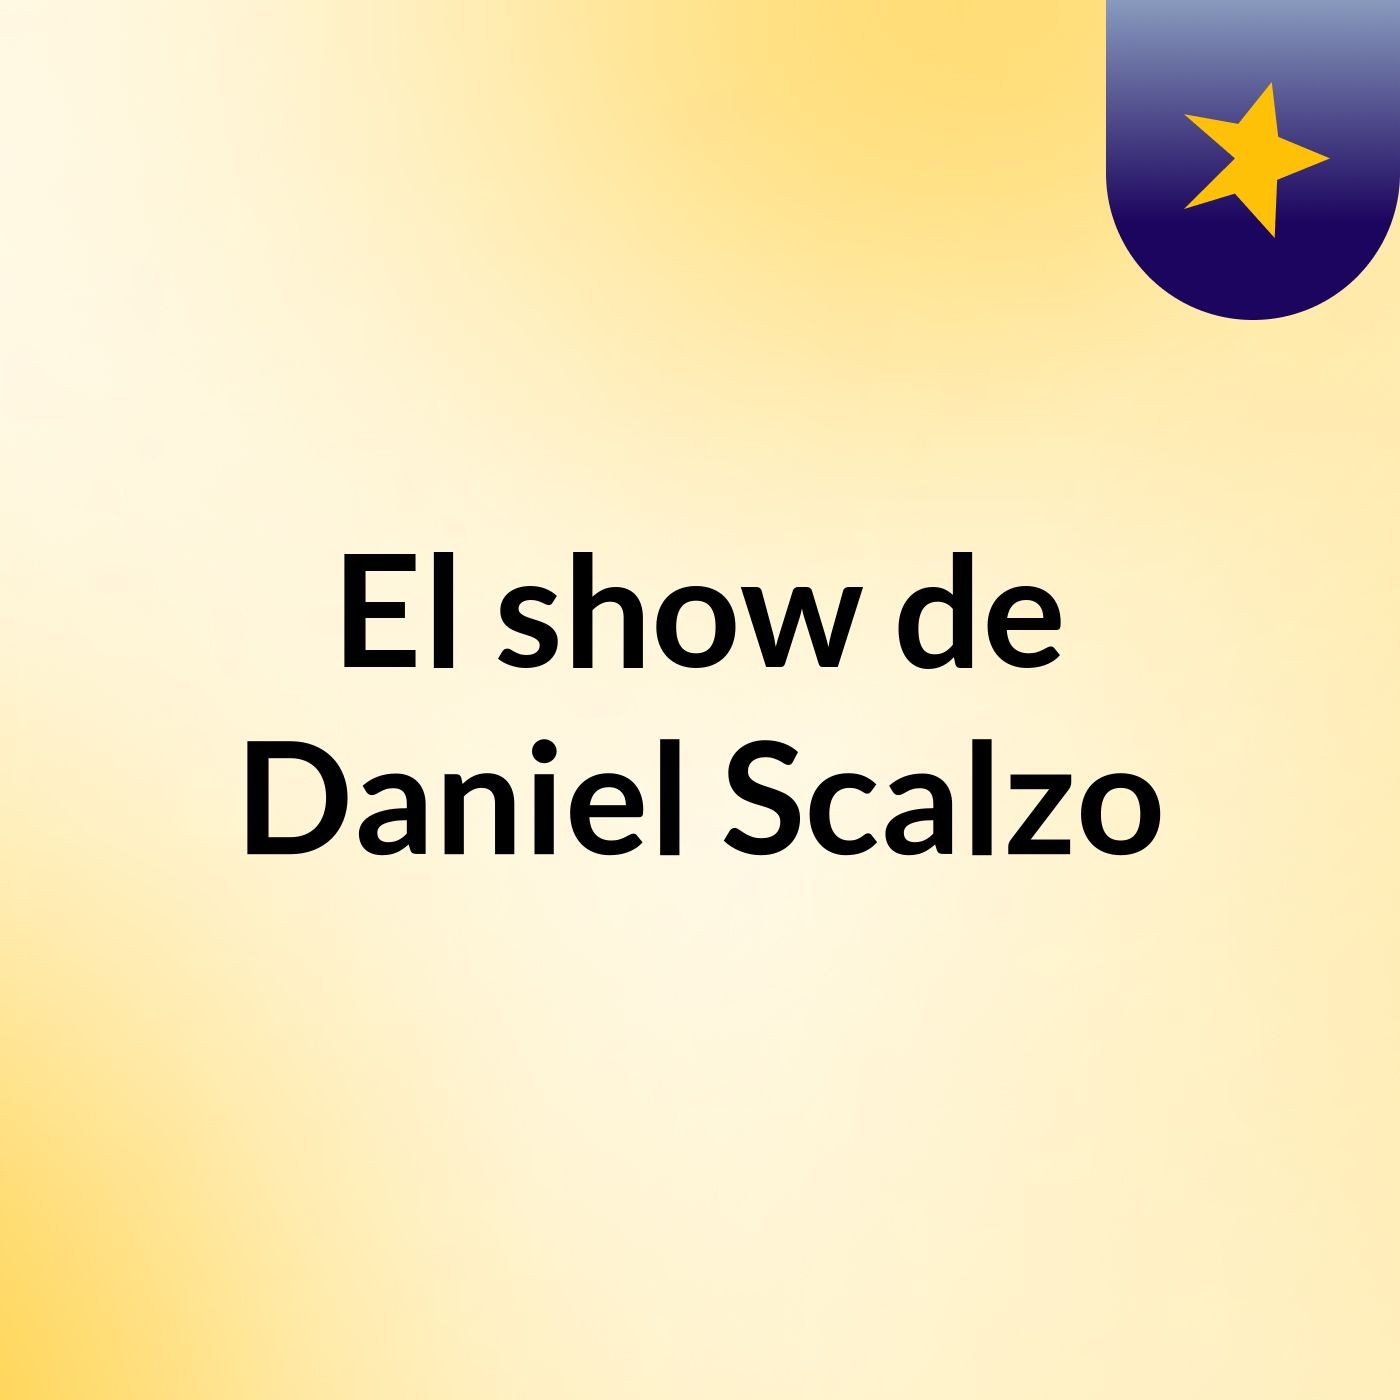 El show de Daniel Scalzo